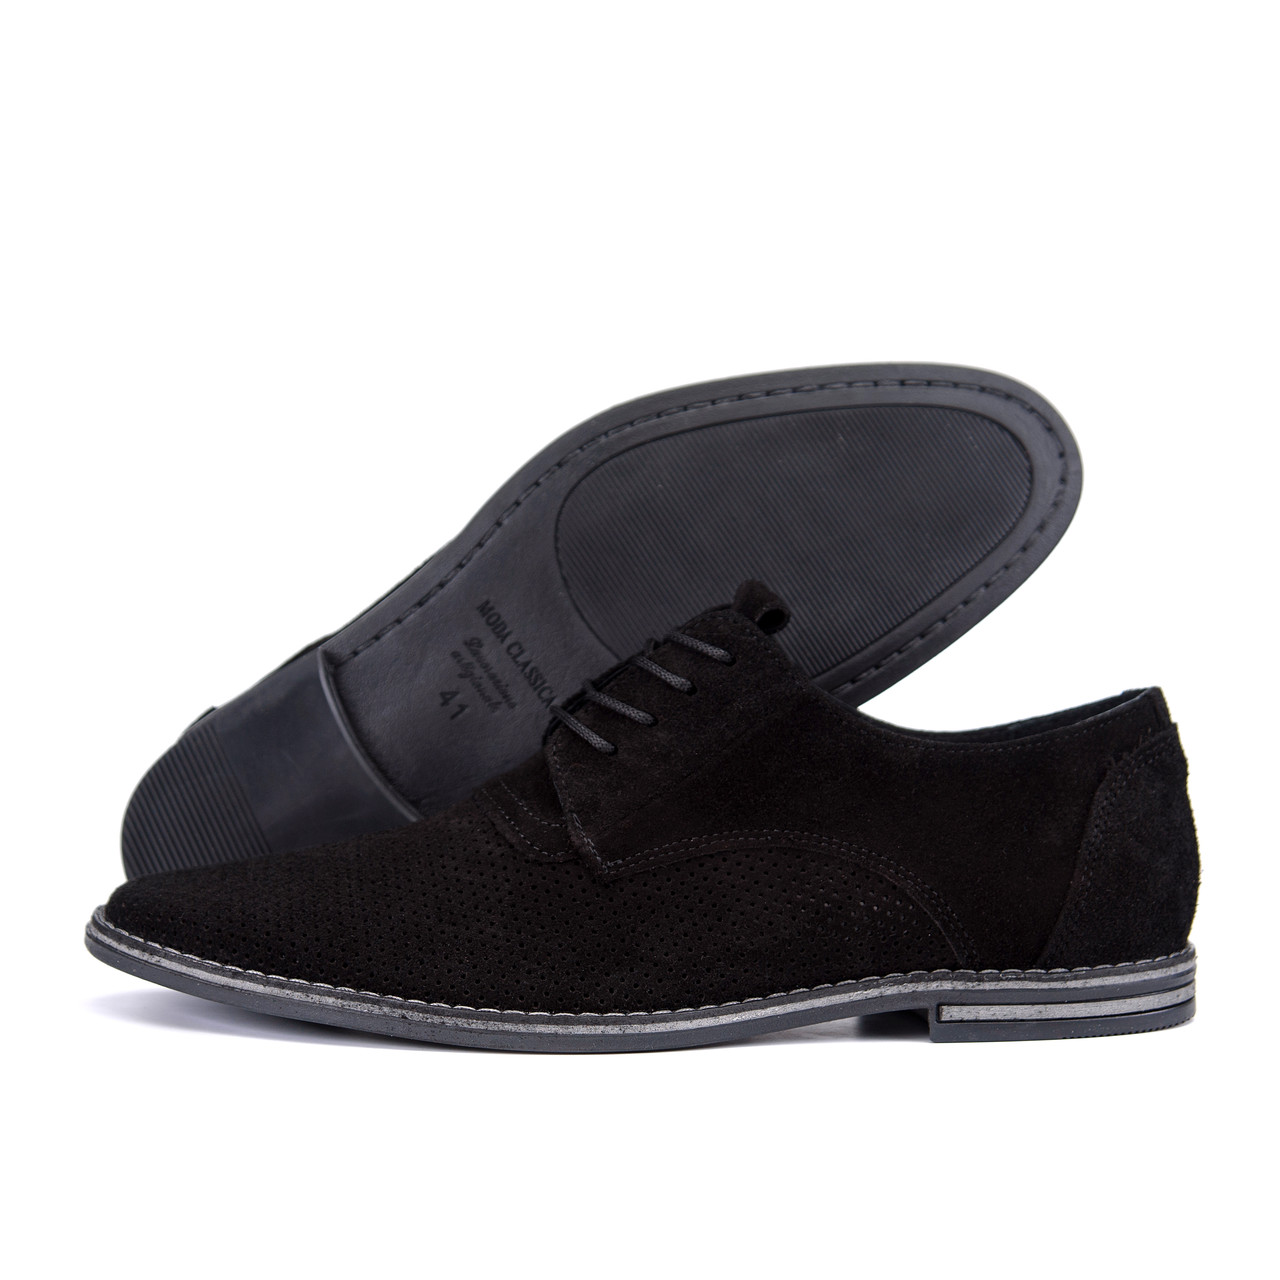 Чоловічі шкіряні літні туфлі VanKristi classic black, фото 1